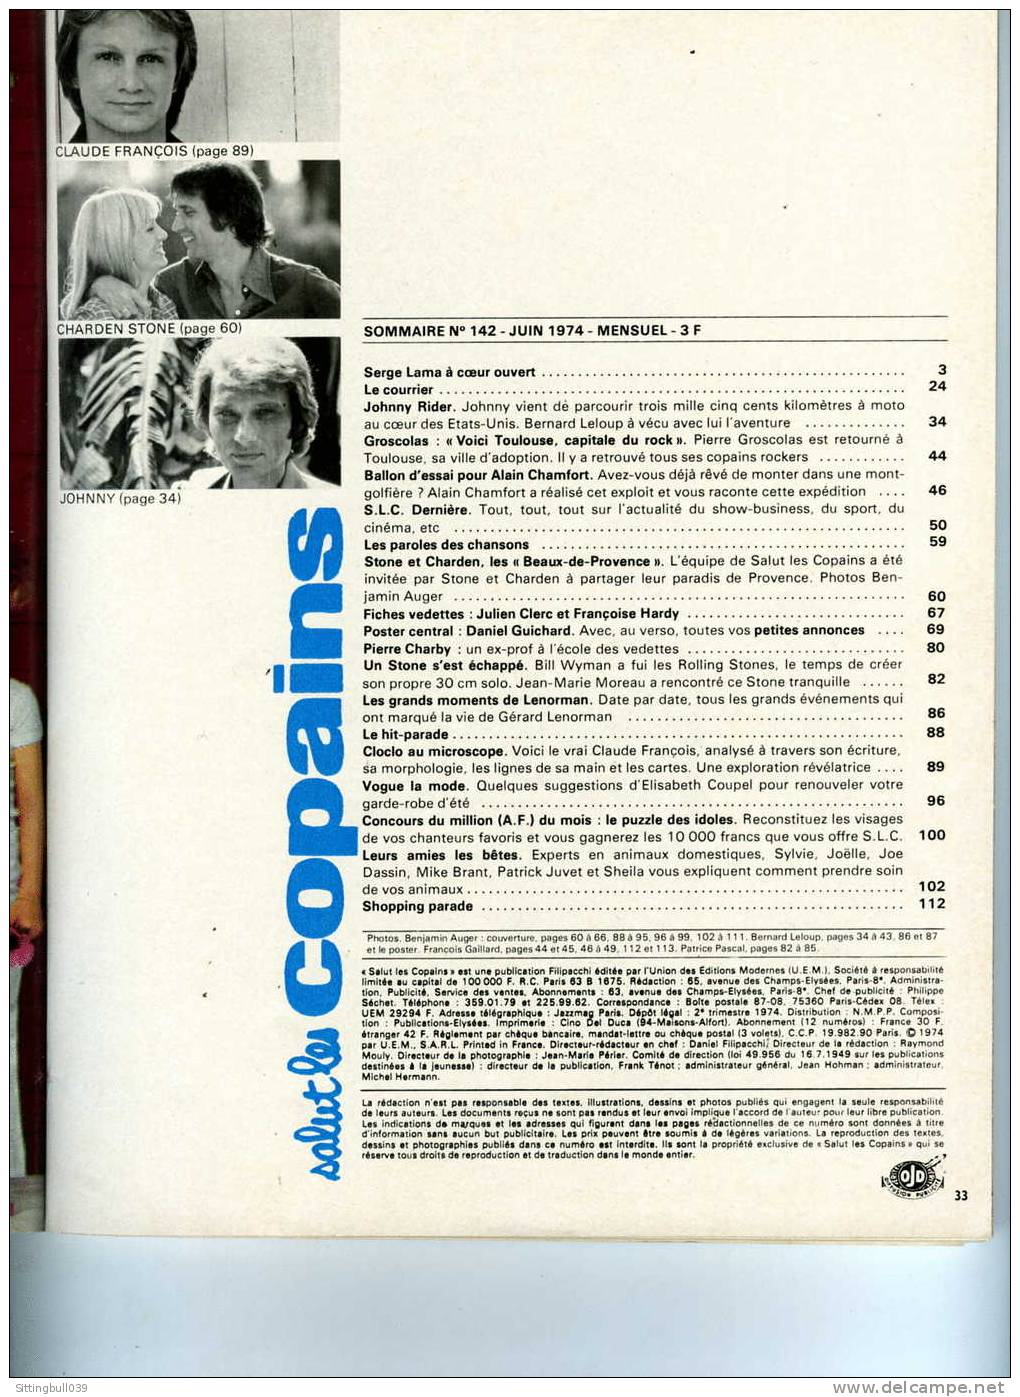 SALUT LES COPAINS N° 142 (SLC) JUIN 1974. CLOCLO, JOHNNY, ALAIN CHAMFORT STONE Et CHARDEN, Etc. SUPERBES PHOTOS. - Musik